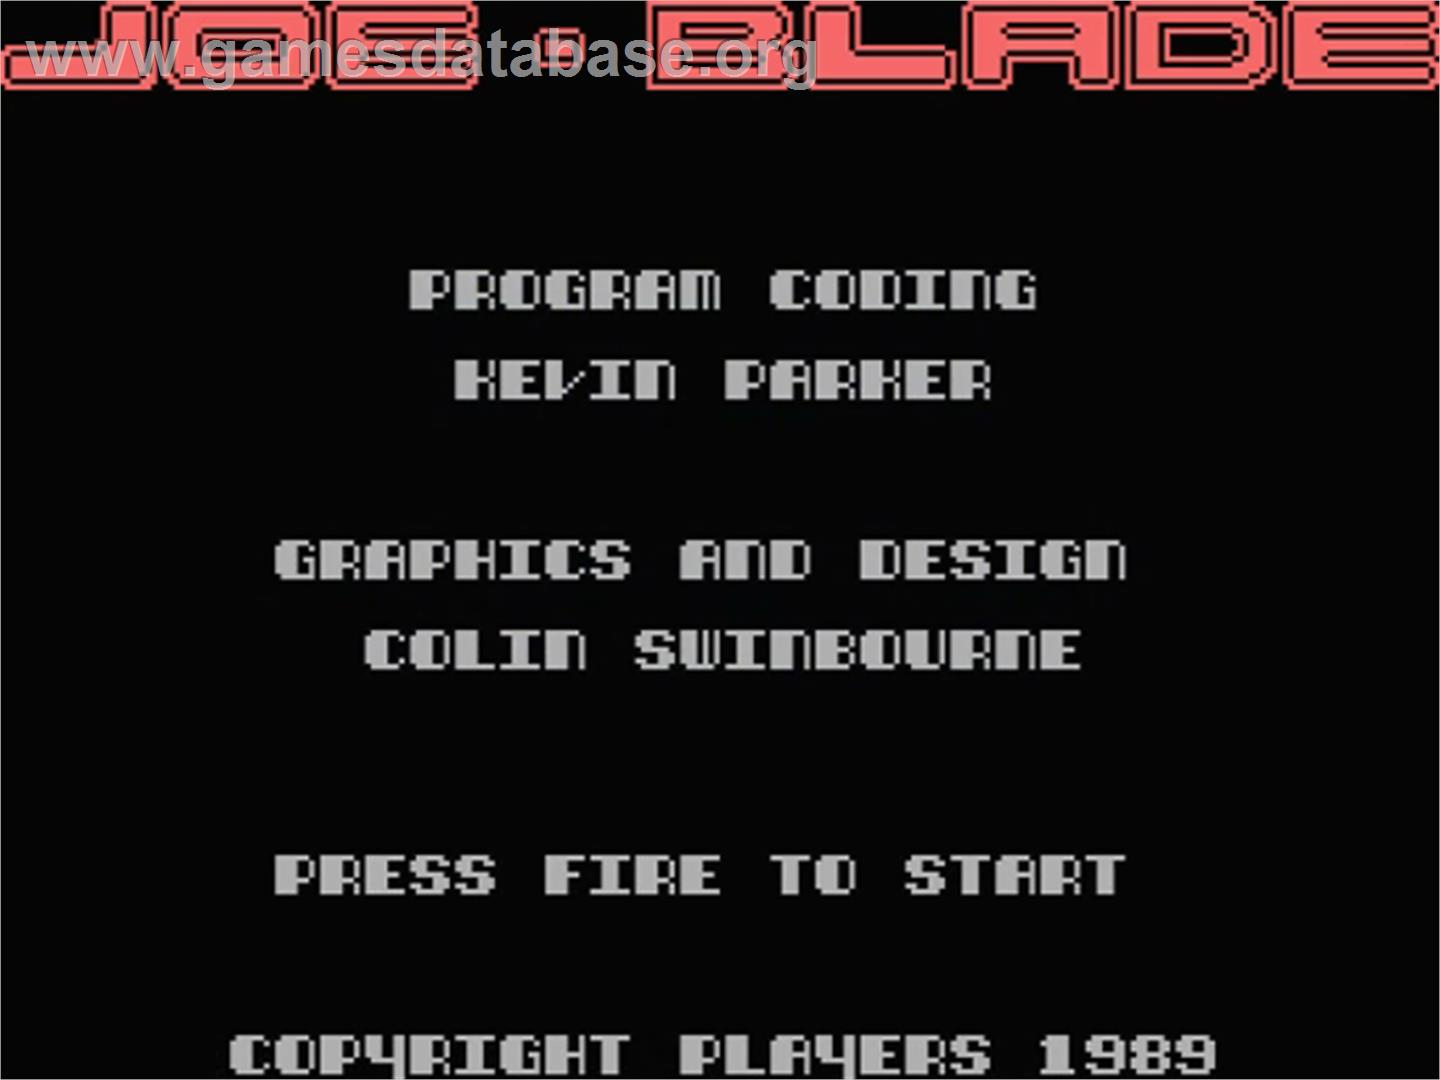 Joe Blade - MSX - Artwork - Title Screen